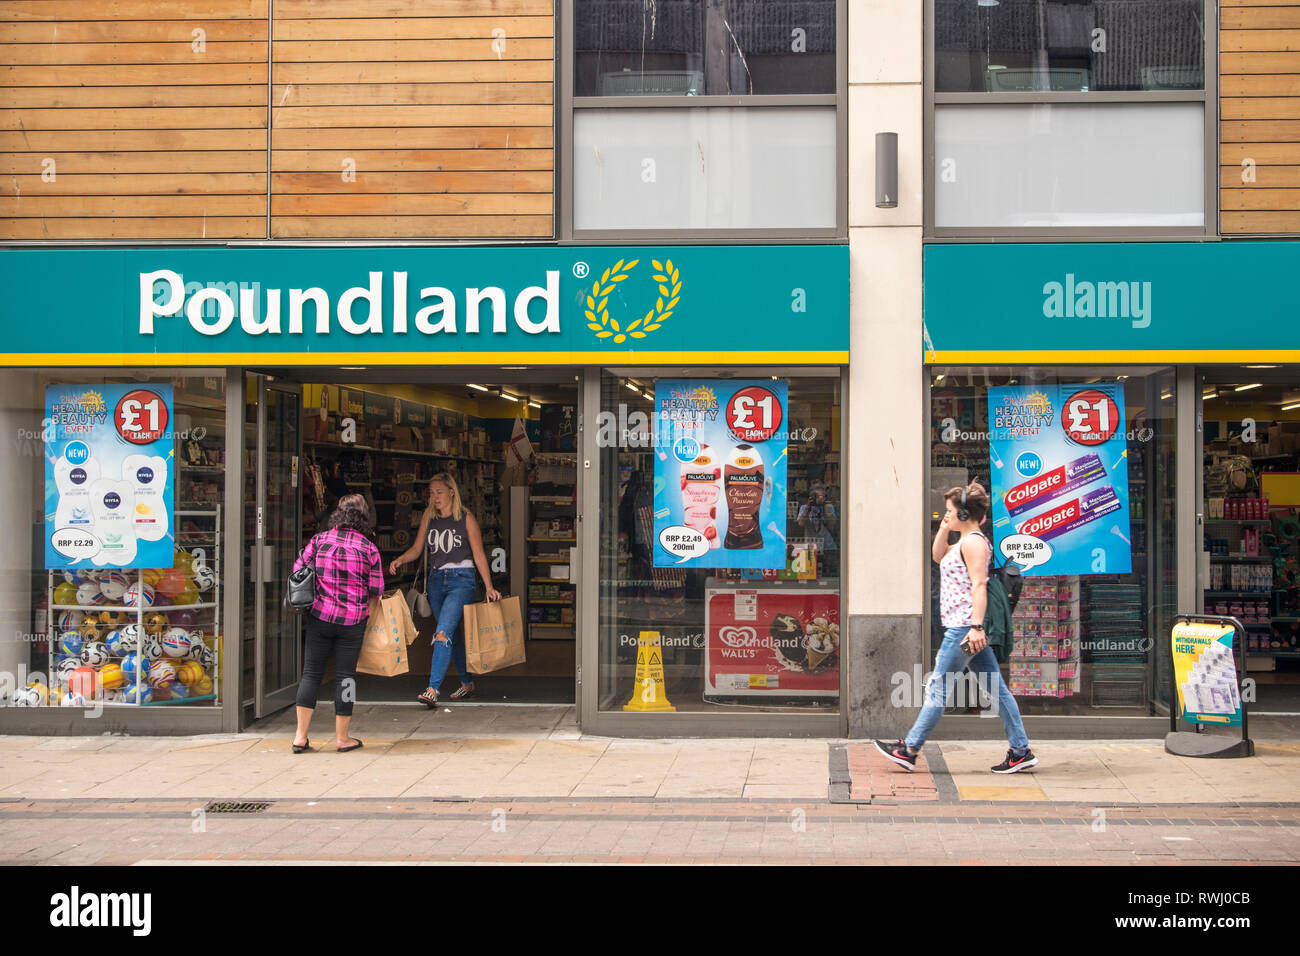 Poundland store, Bristol, UK Stock Photo